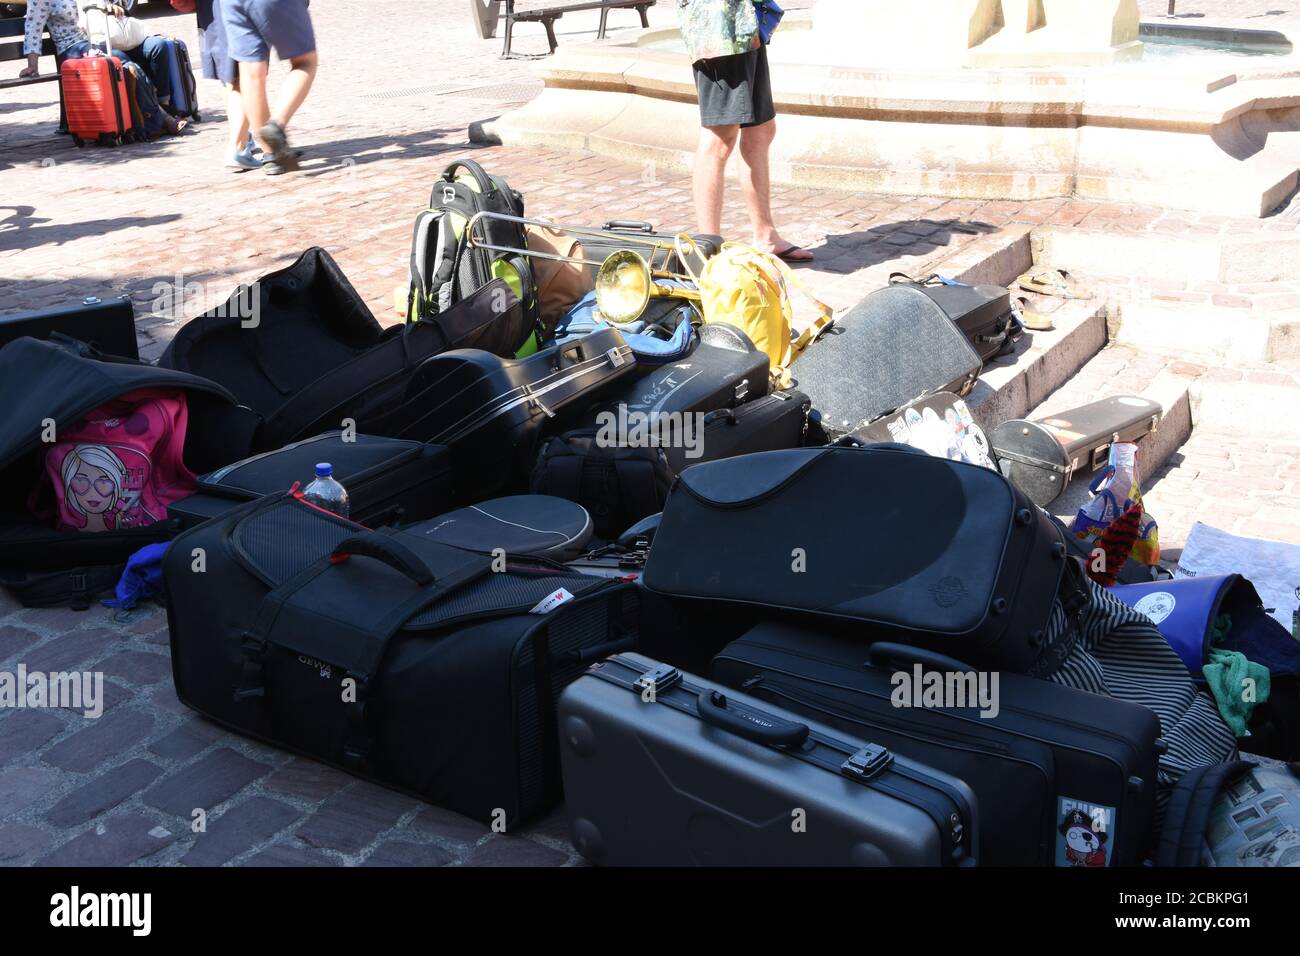 Mucchio di casse o scatole per strumenti a vento e tamburi di musicisti di strada nella città di Colmar, Francia durante il fine settimana di giorno estivo per rallegrare i turisti. Foto Stock